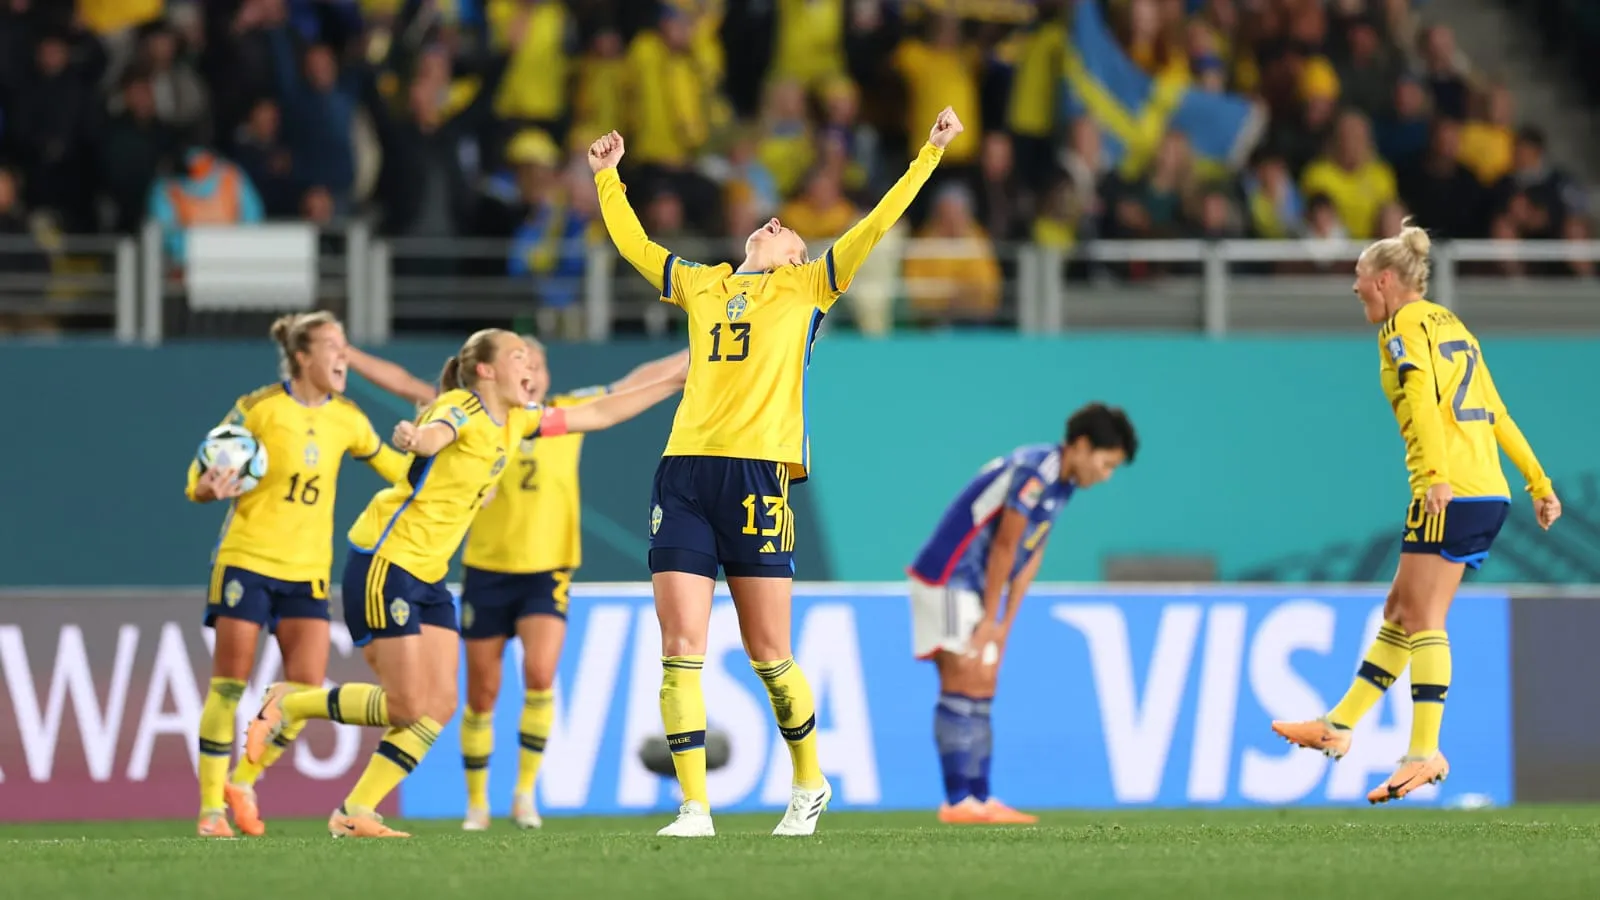 Suécia se classificou para a sua segunda final na história dos Mundiais